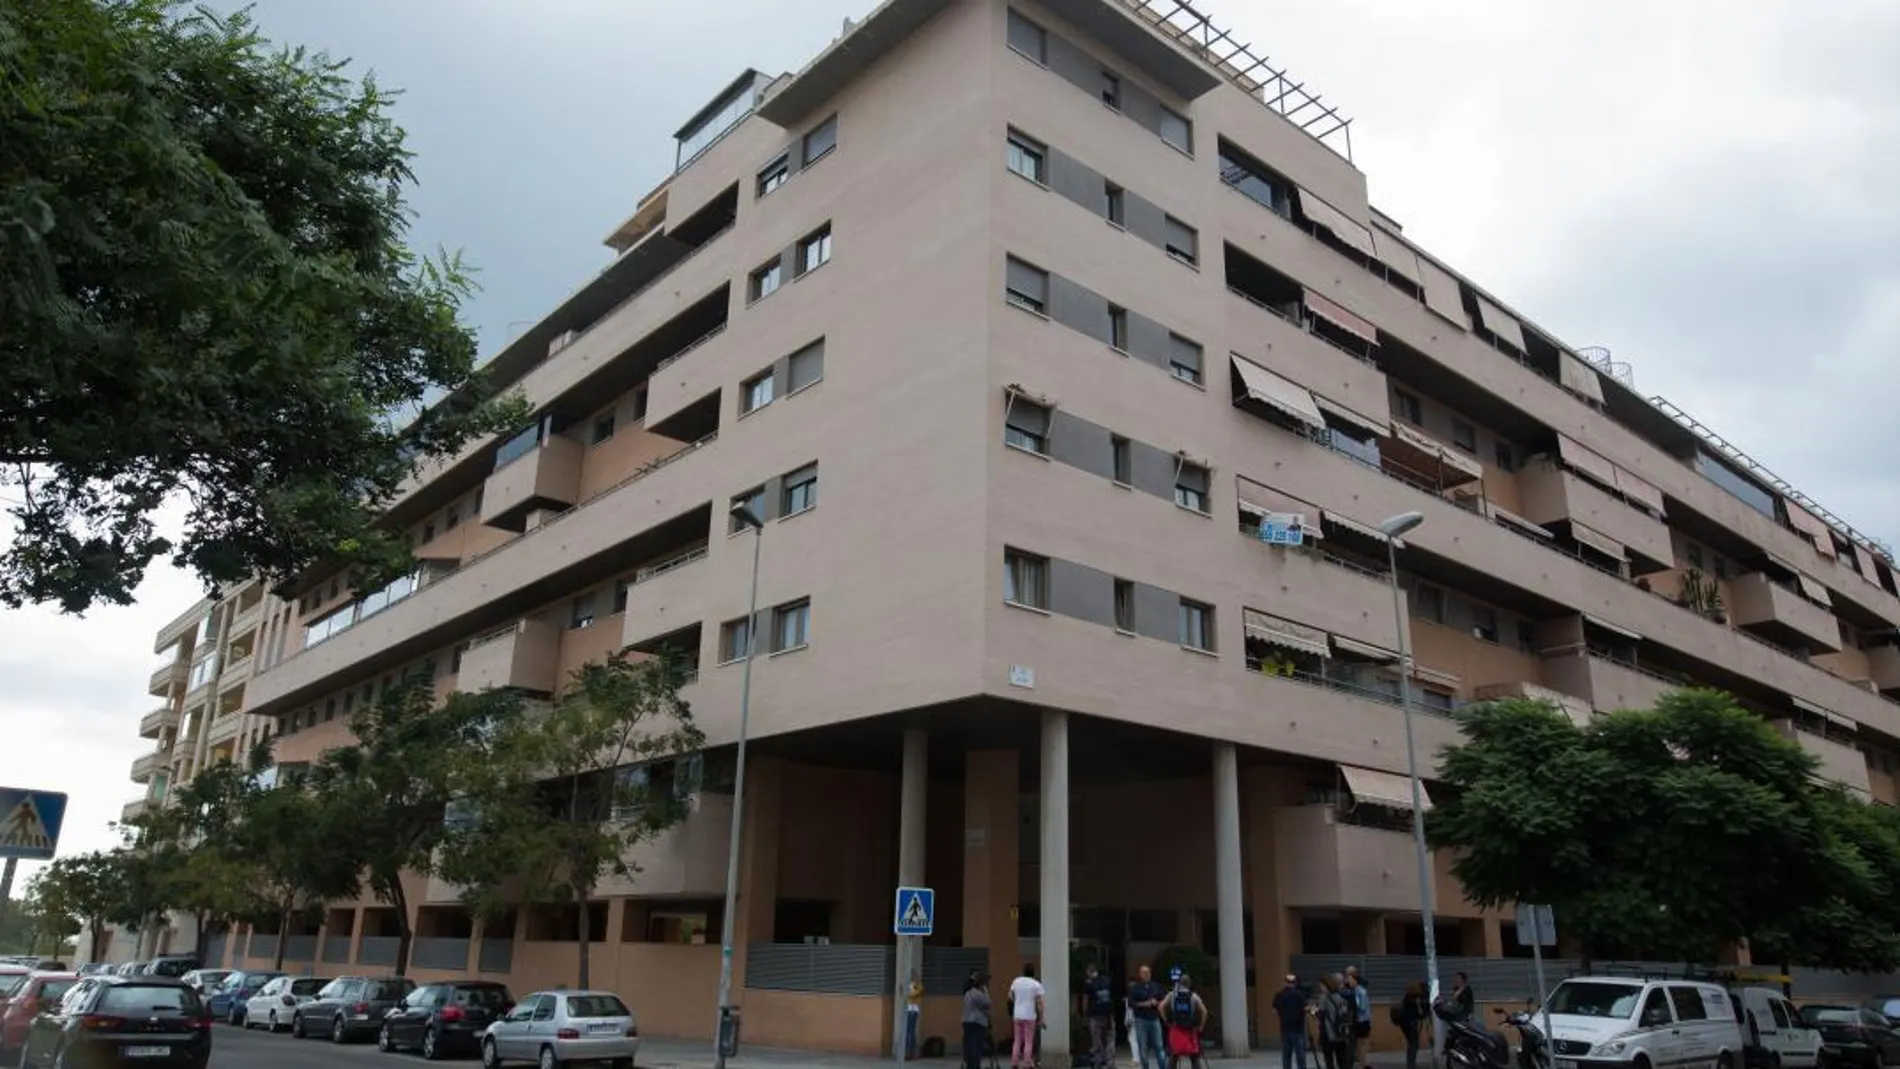 Edificio en Málaga capital donde el hombre ha tirado a la niña y luego se ha suicidado/Foto: Efe